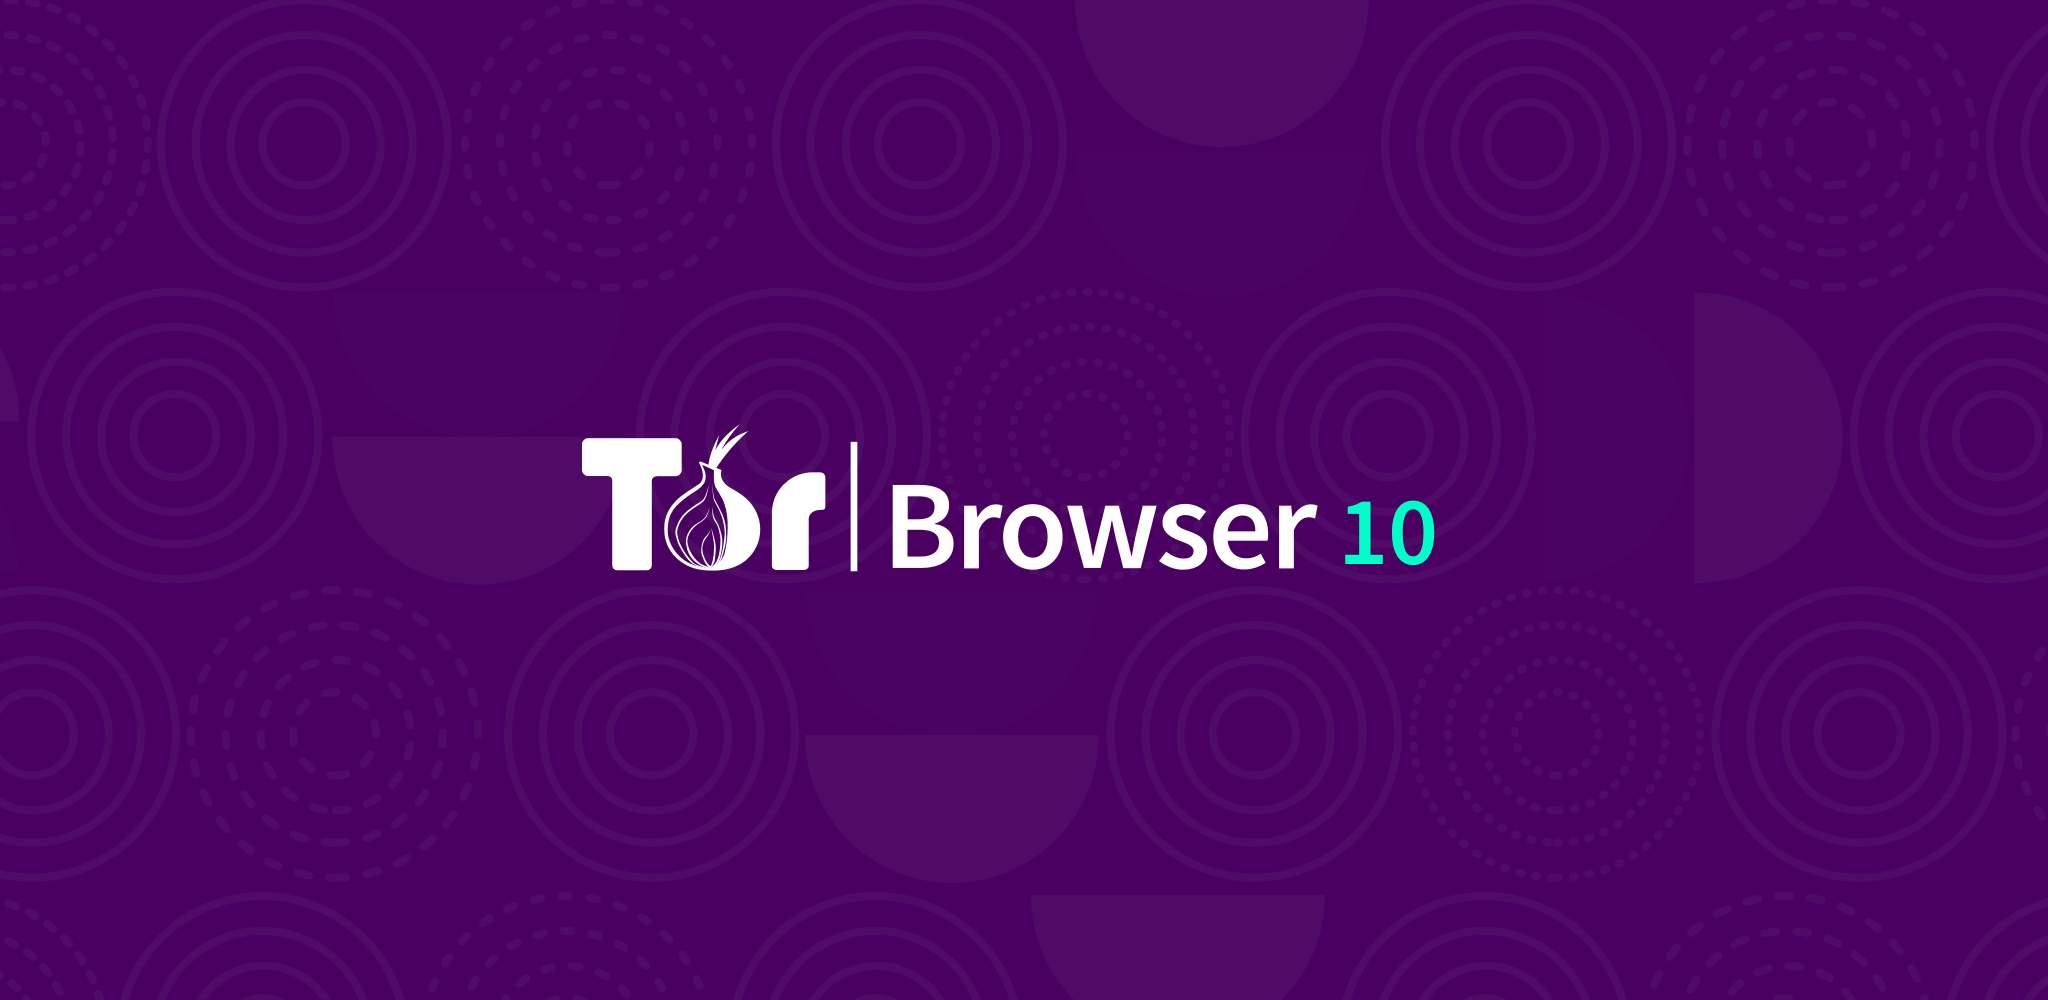 Tor browser last version mega лучший поисковик в тор браузере мега